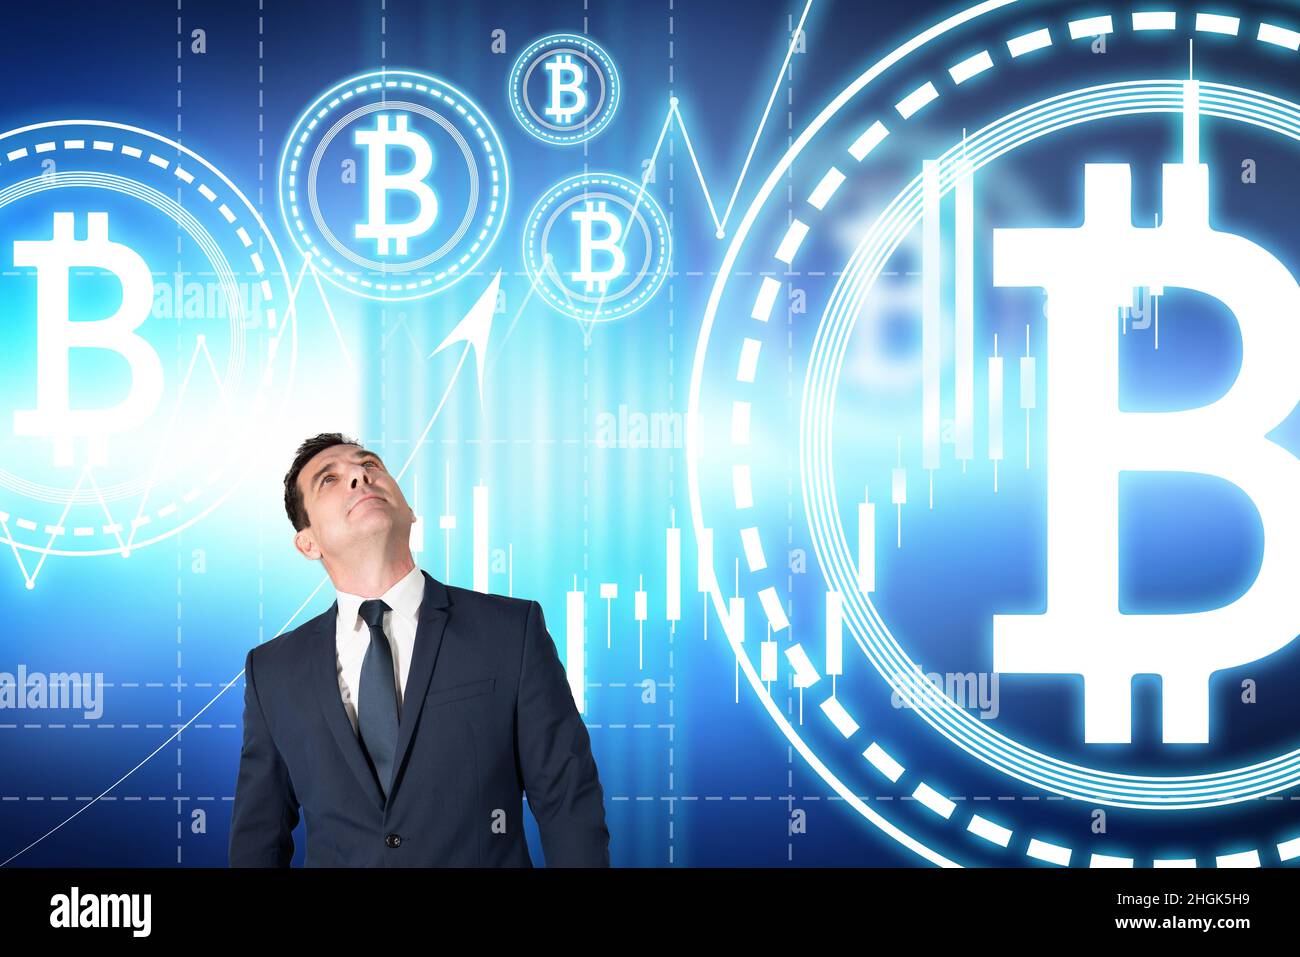 Le courtier regarde et observe la montée du bitcoin sur le marché des crypto-monnaies Banque D'Images